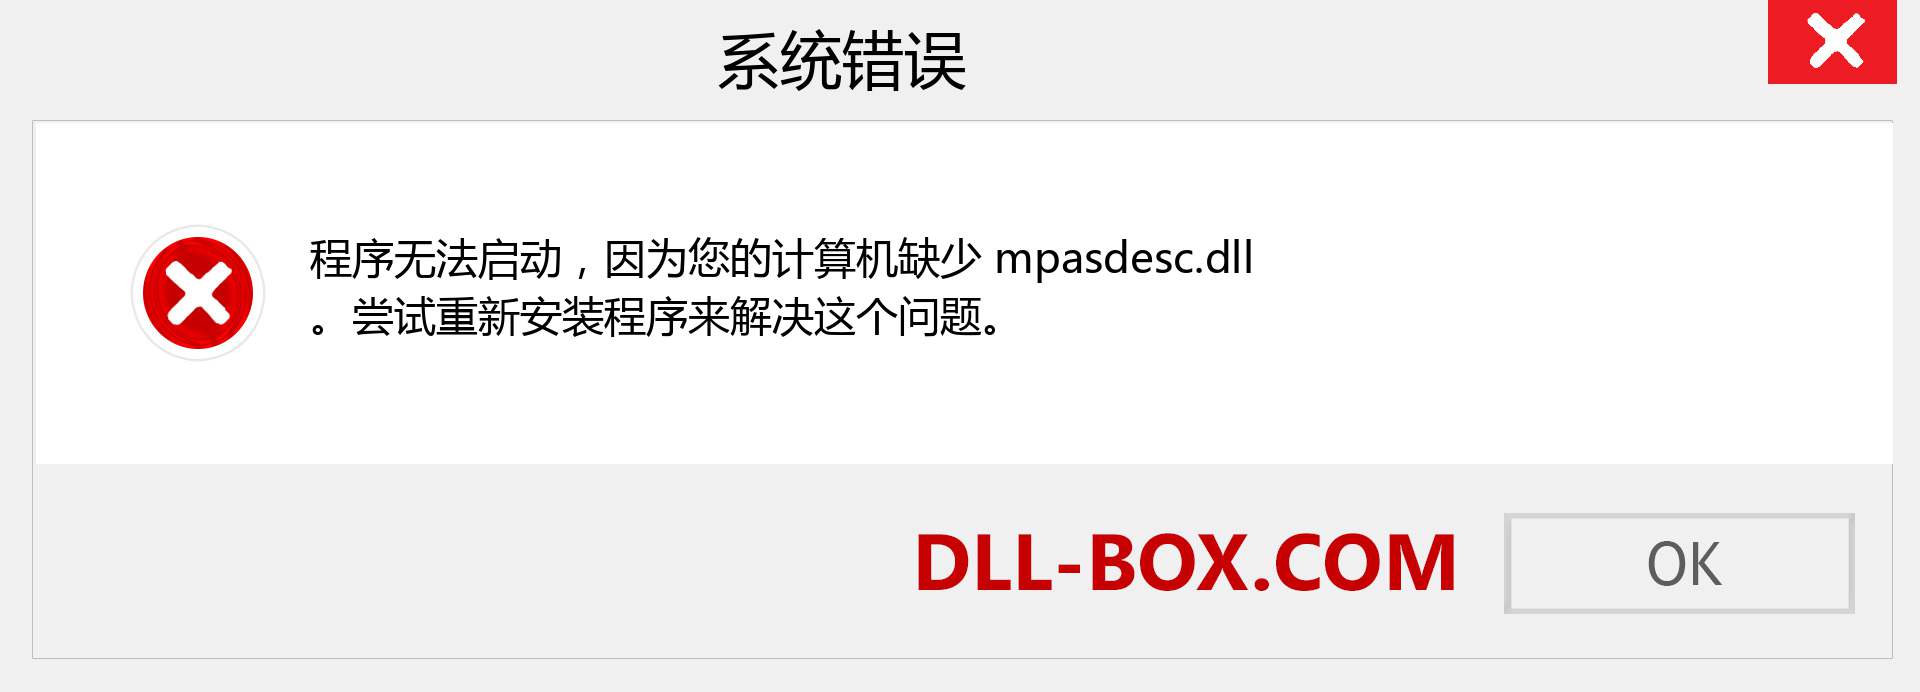 mpasdesc.dll 文件丢失？。 适用于 Windows 7、8、10 的下载 - 修复 Windows、照片、图像上的 mpasdesc dll 丢失错误